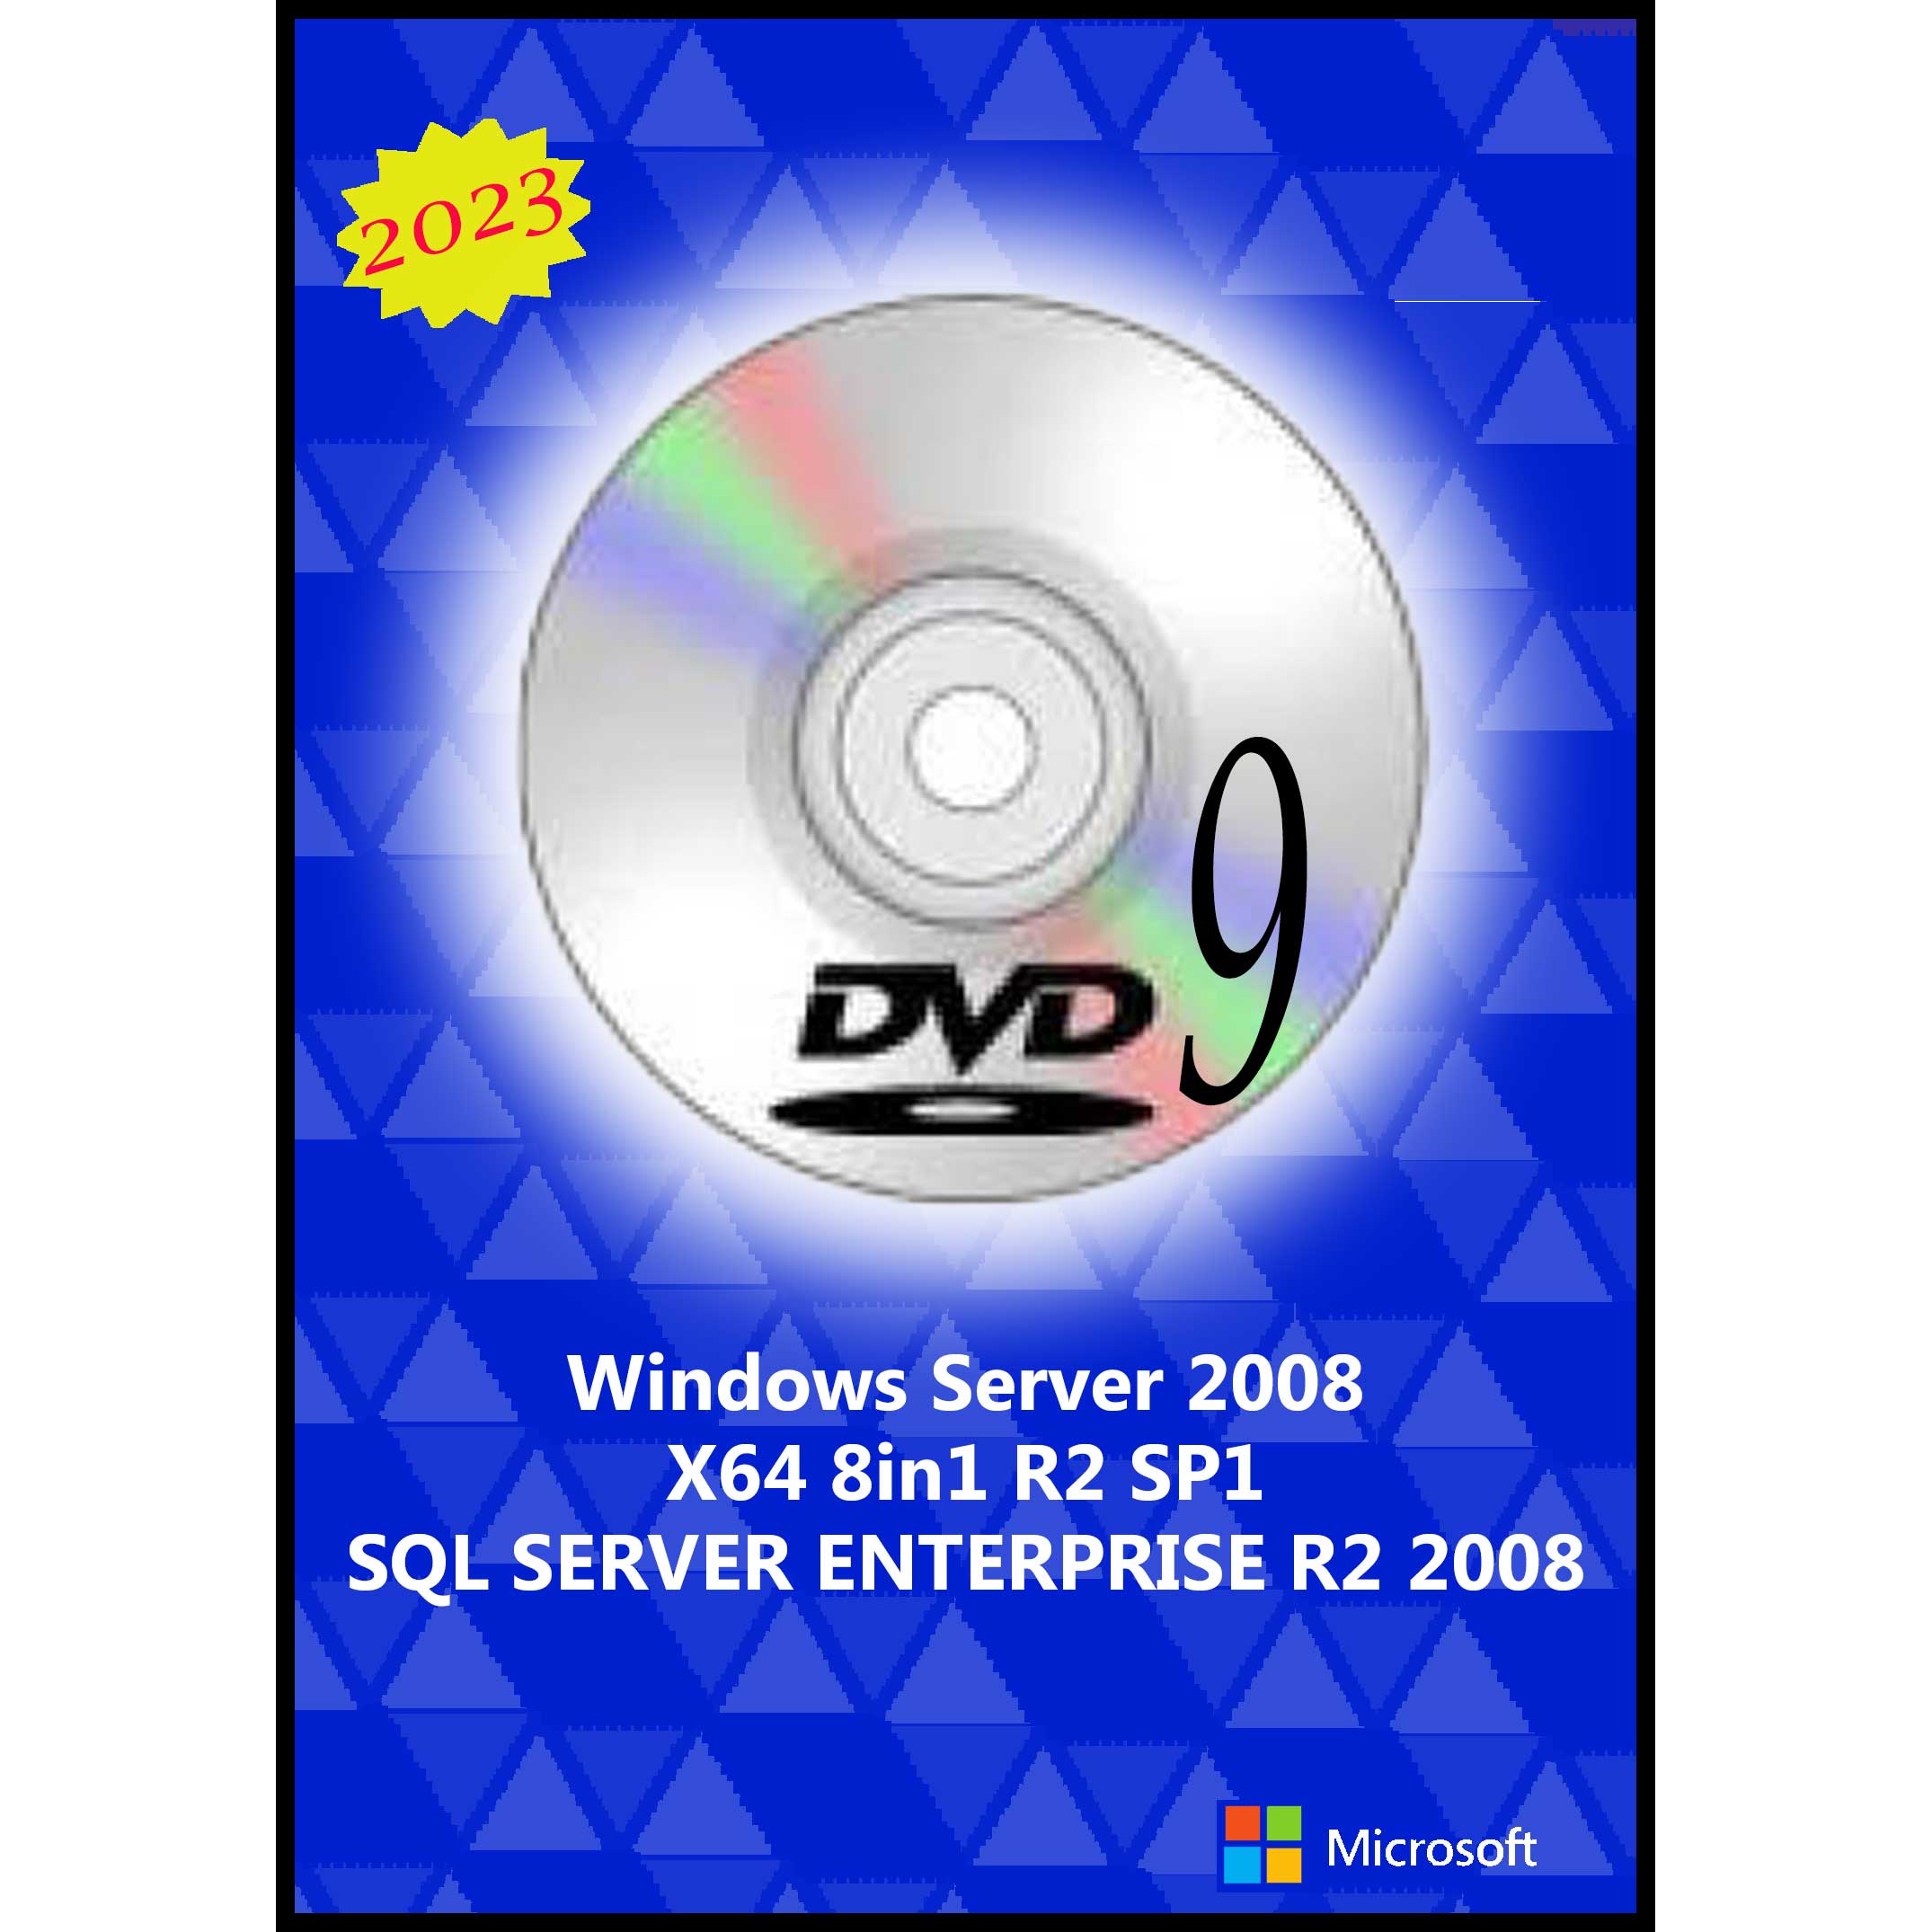 سیستم عامل Windows Server 2008 8in1 R2 SP1 - SQL SERVER ENT. 2008 - 2023 DVD9 نشر مایکروسافت